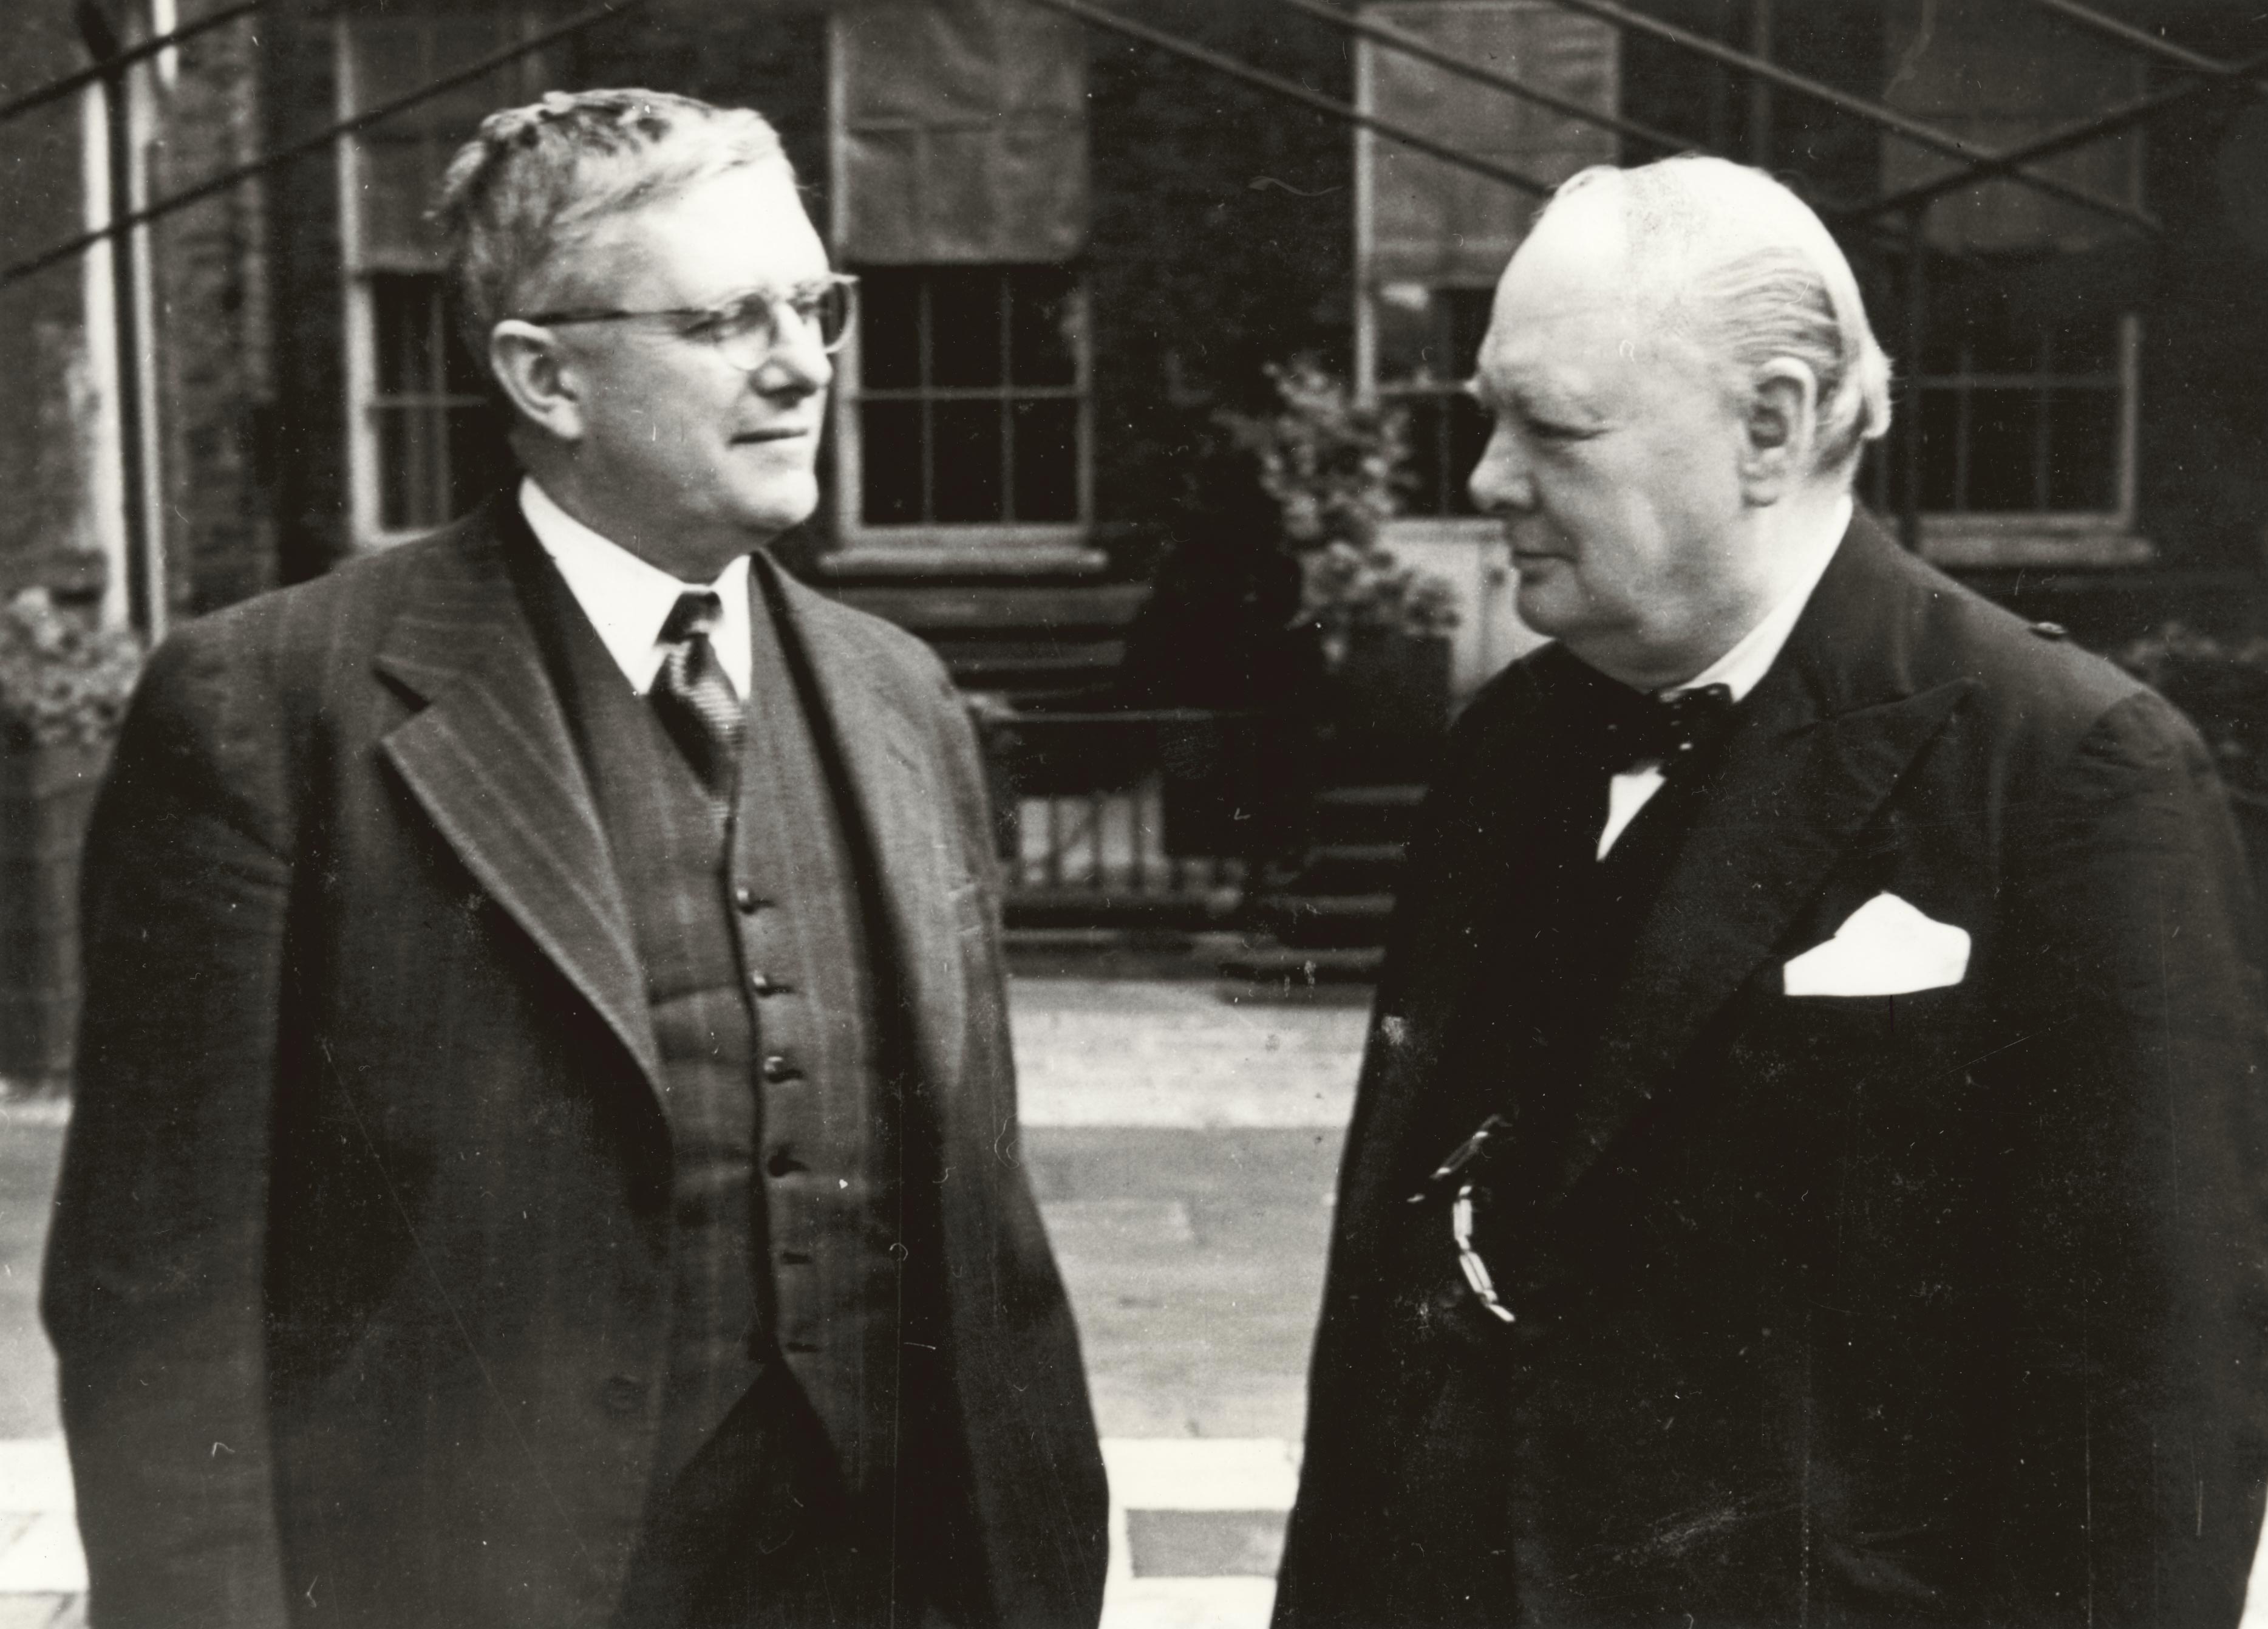 Australia’s Minister for External Affairs, Dr V.H. Evatt (left) with British Prime Minister Winston Churchill, London, 1942 or 1943.